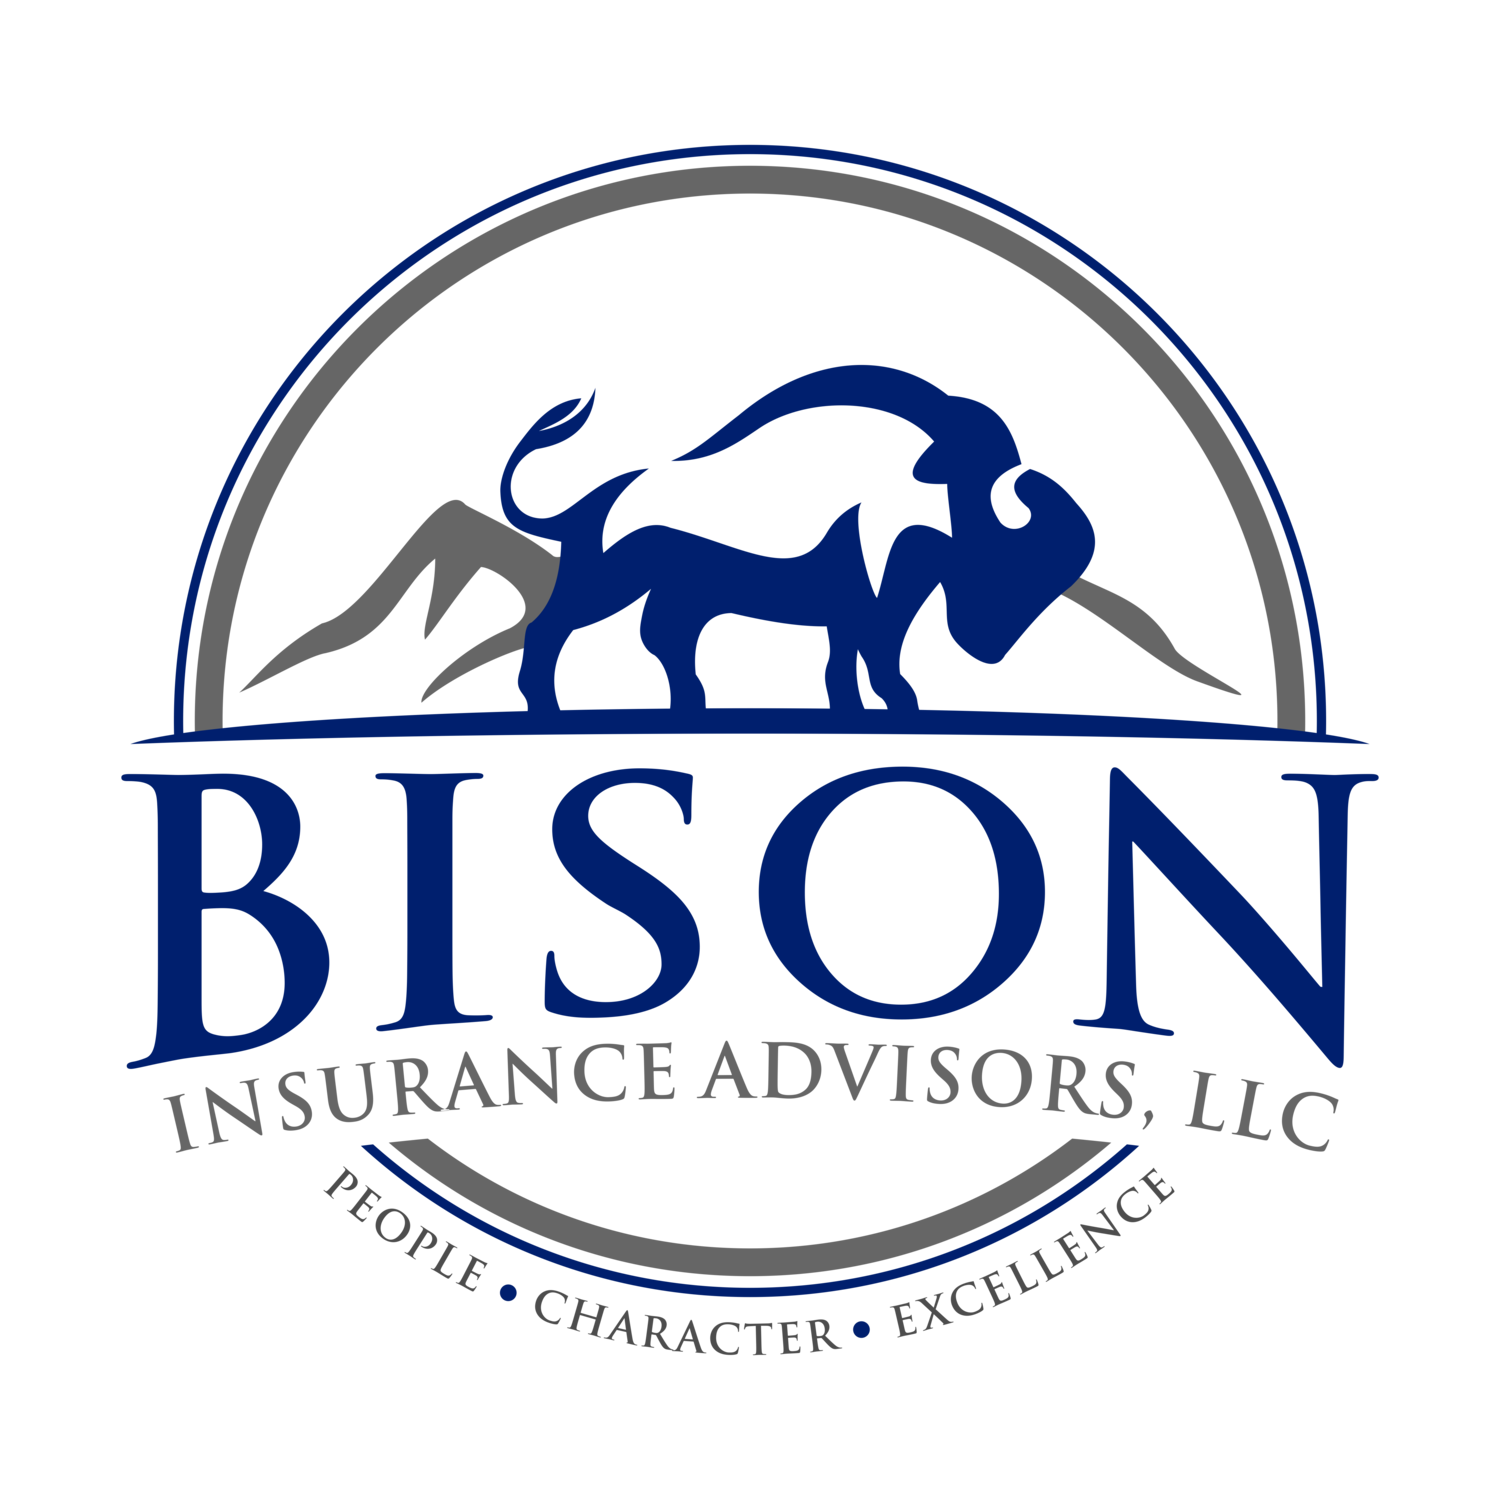 Bison Insurance Advisors LLC